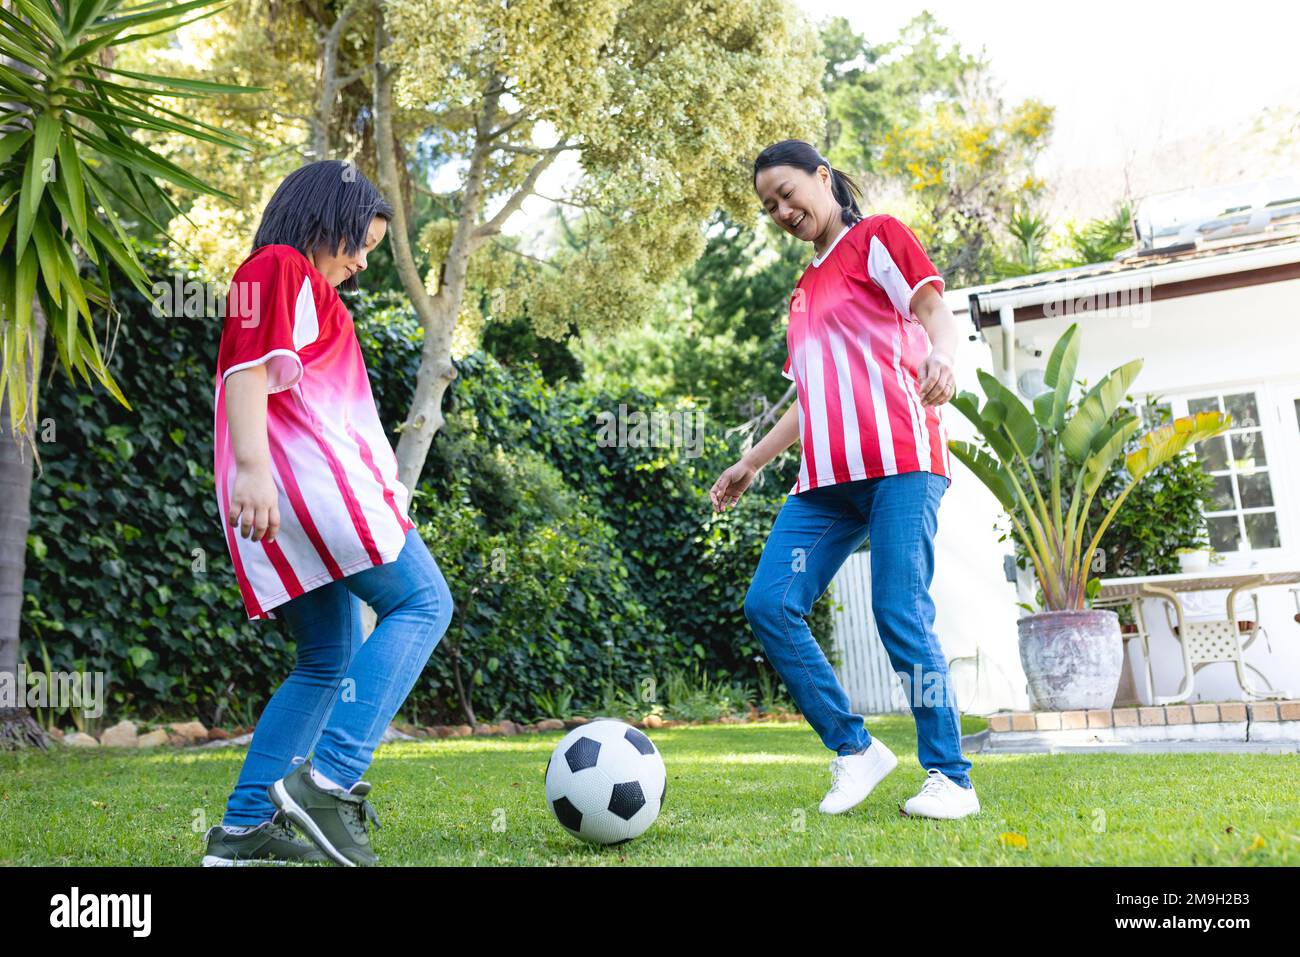 Glückliche asiatische Mutter und Tochter, die zusammen im Garten Fußball spielen Stockfoto